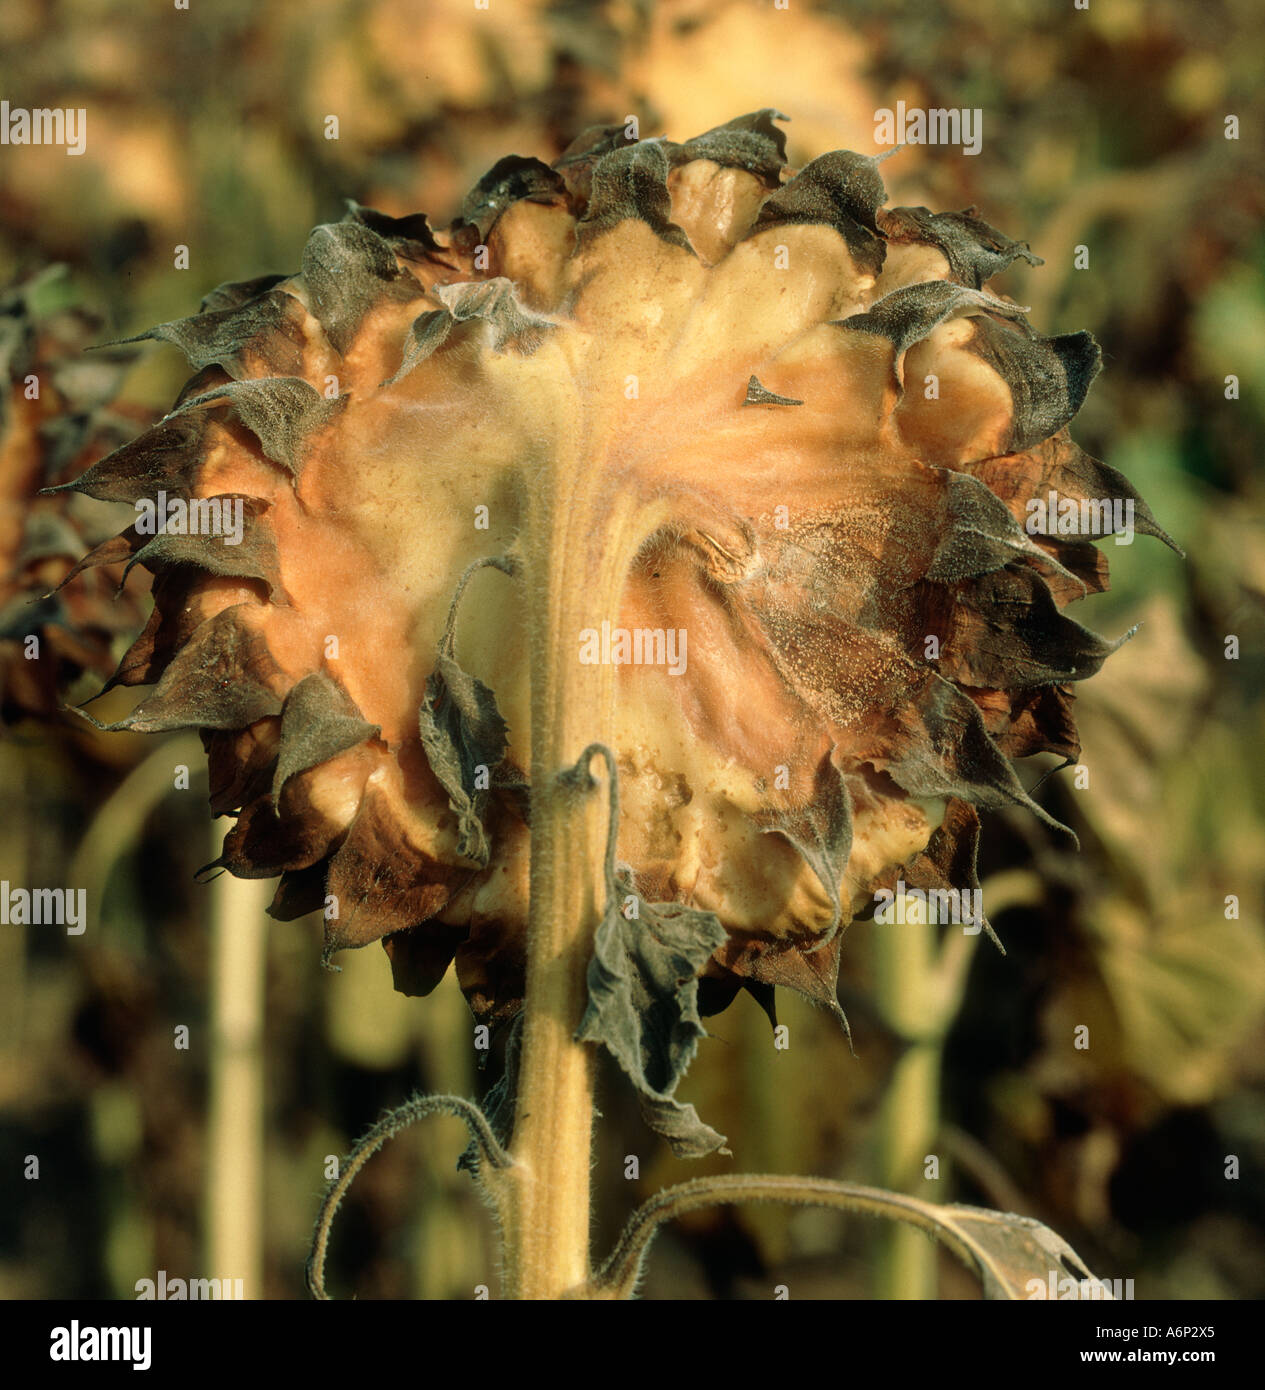 El moho gris Botrytis cinerea filigrana y micelio sobre girasol seedhead Foto de stock